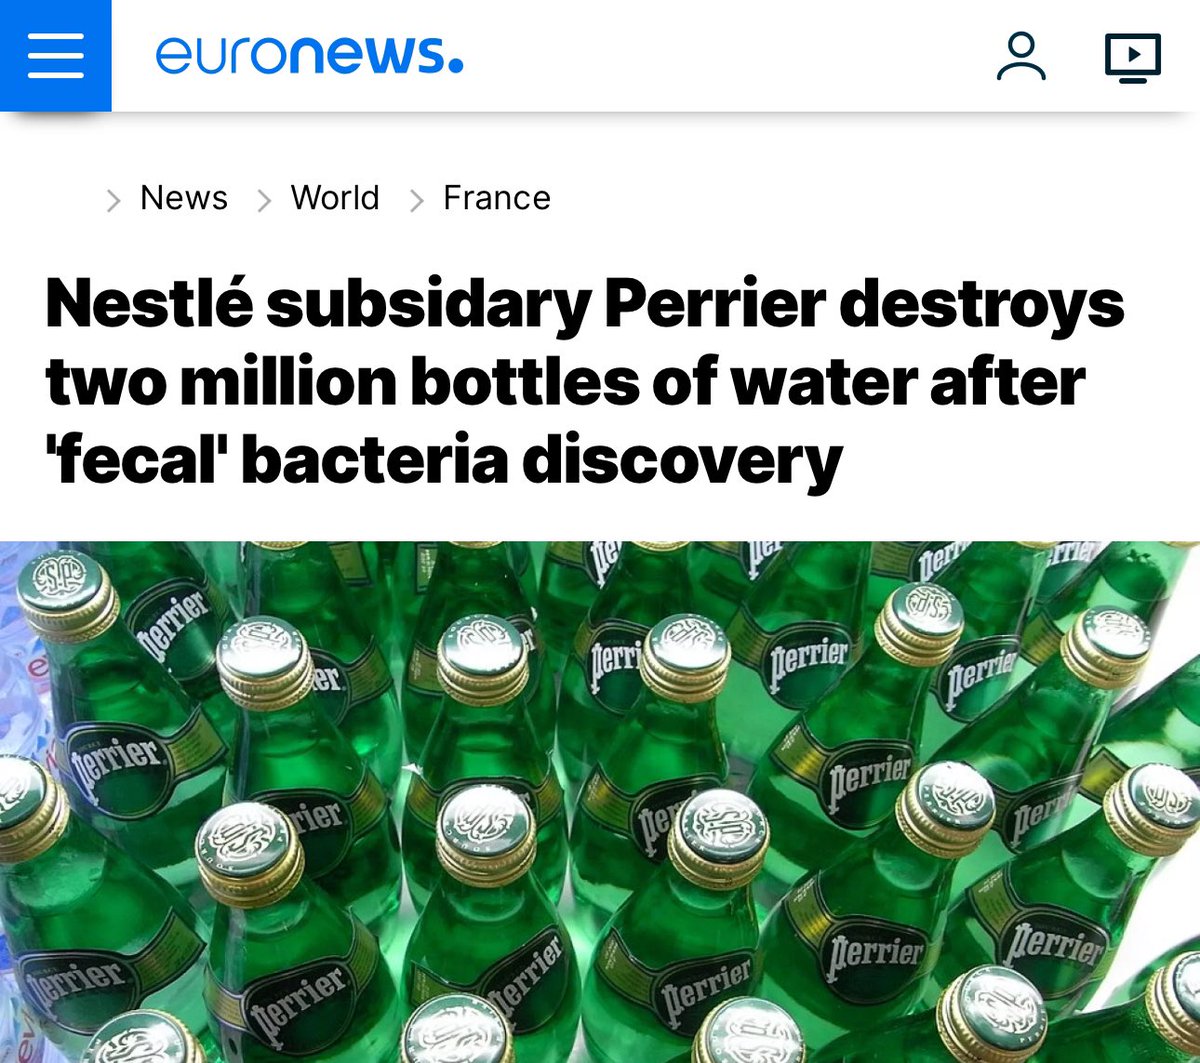 Nestle’ye ait olan ve ülkemizde de satışı olan Perrier firmasının Fransa’daki şişe sularında dışkı bakterisi bulundu ve 2 milyondan fazla şişe su imha edildi.